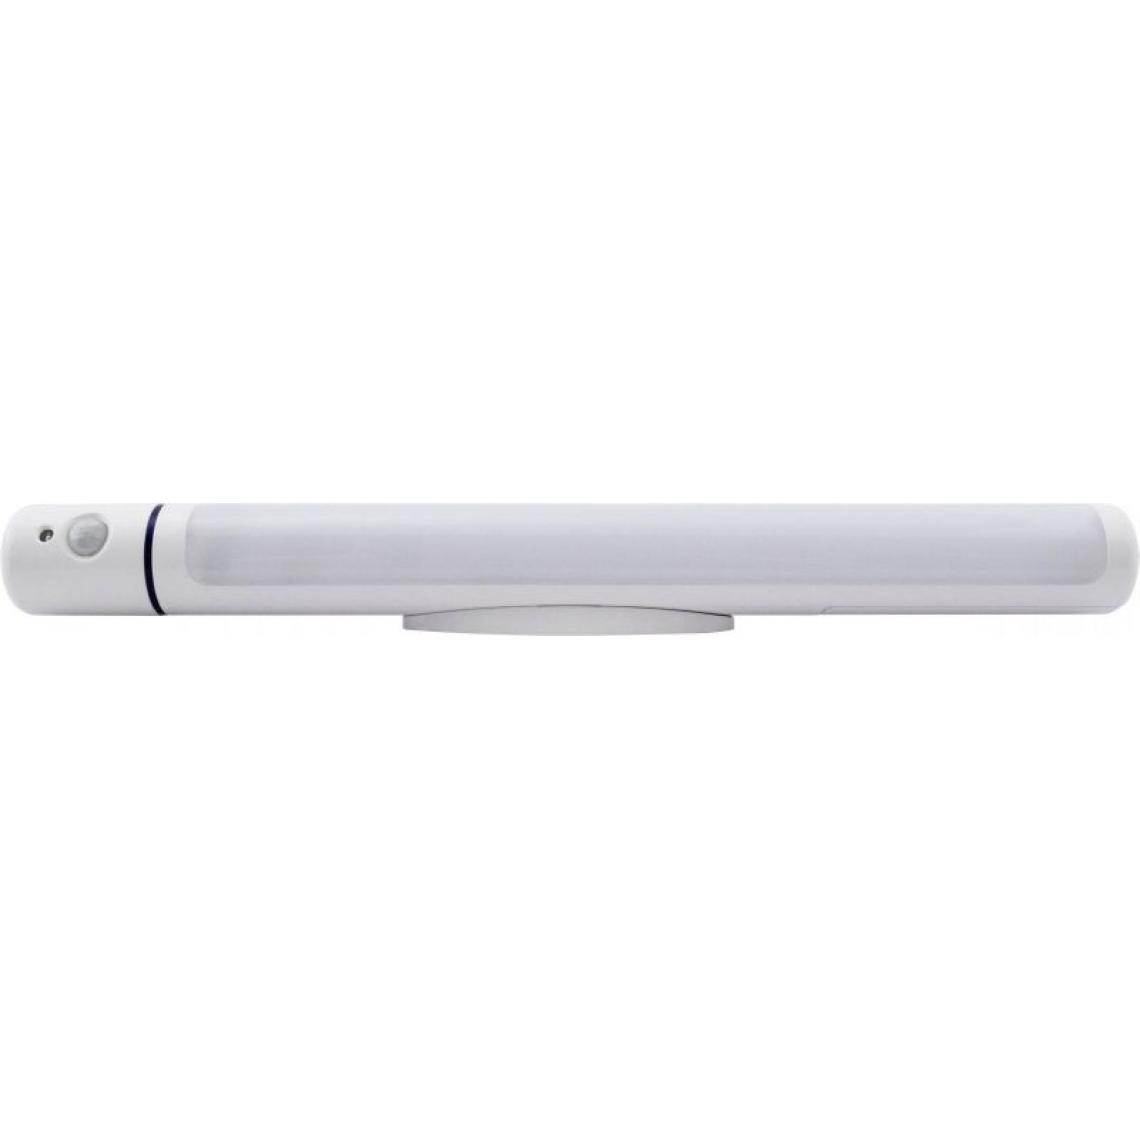 Inconnu - Müller Licht 27700016 Petite lampe portable avec détecteur de mouvements LED blanc - Lampe connectée